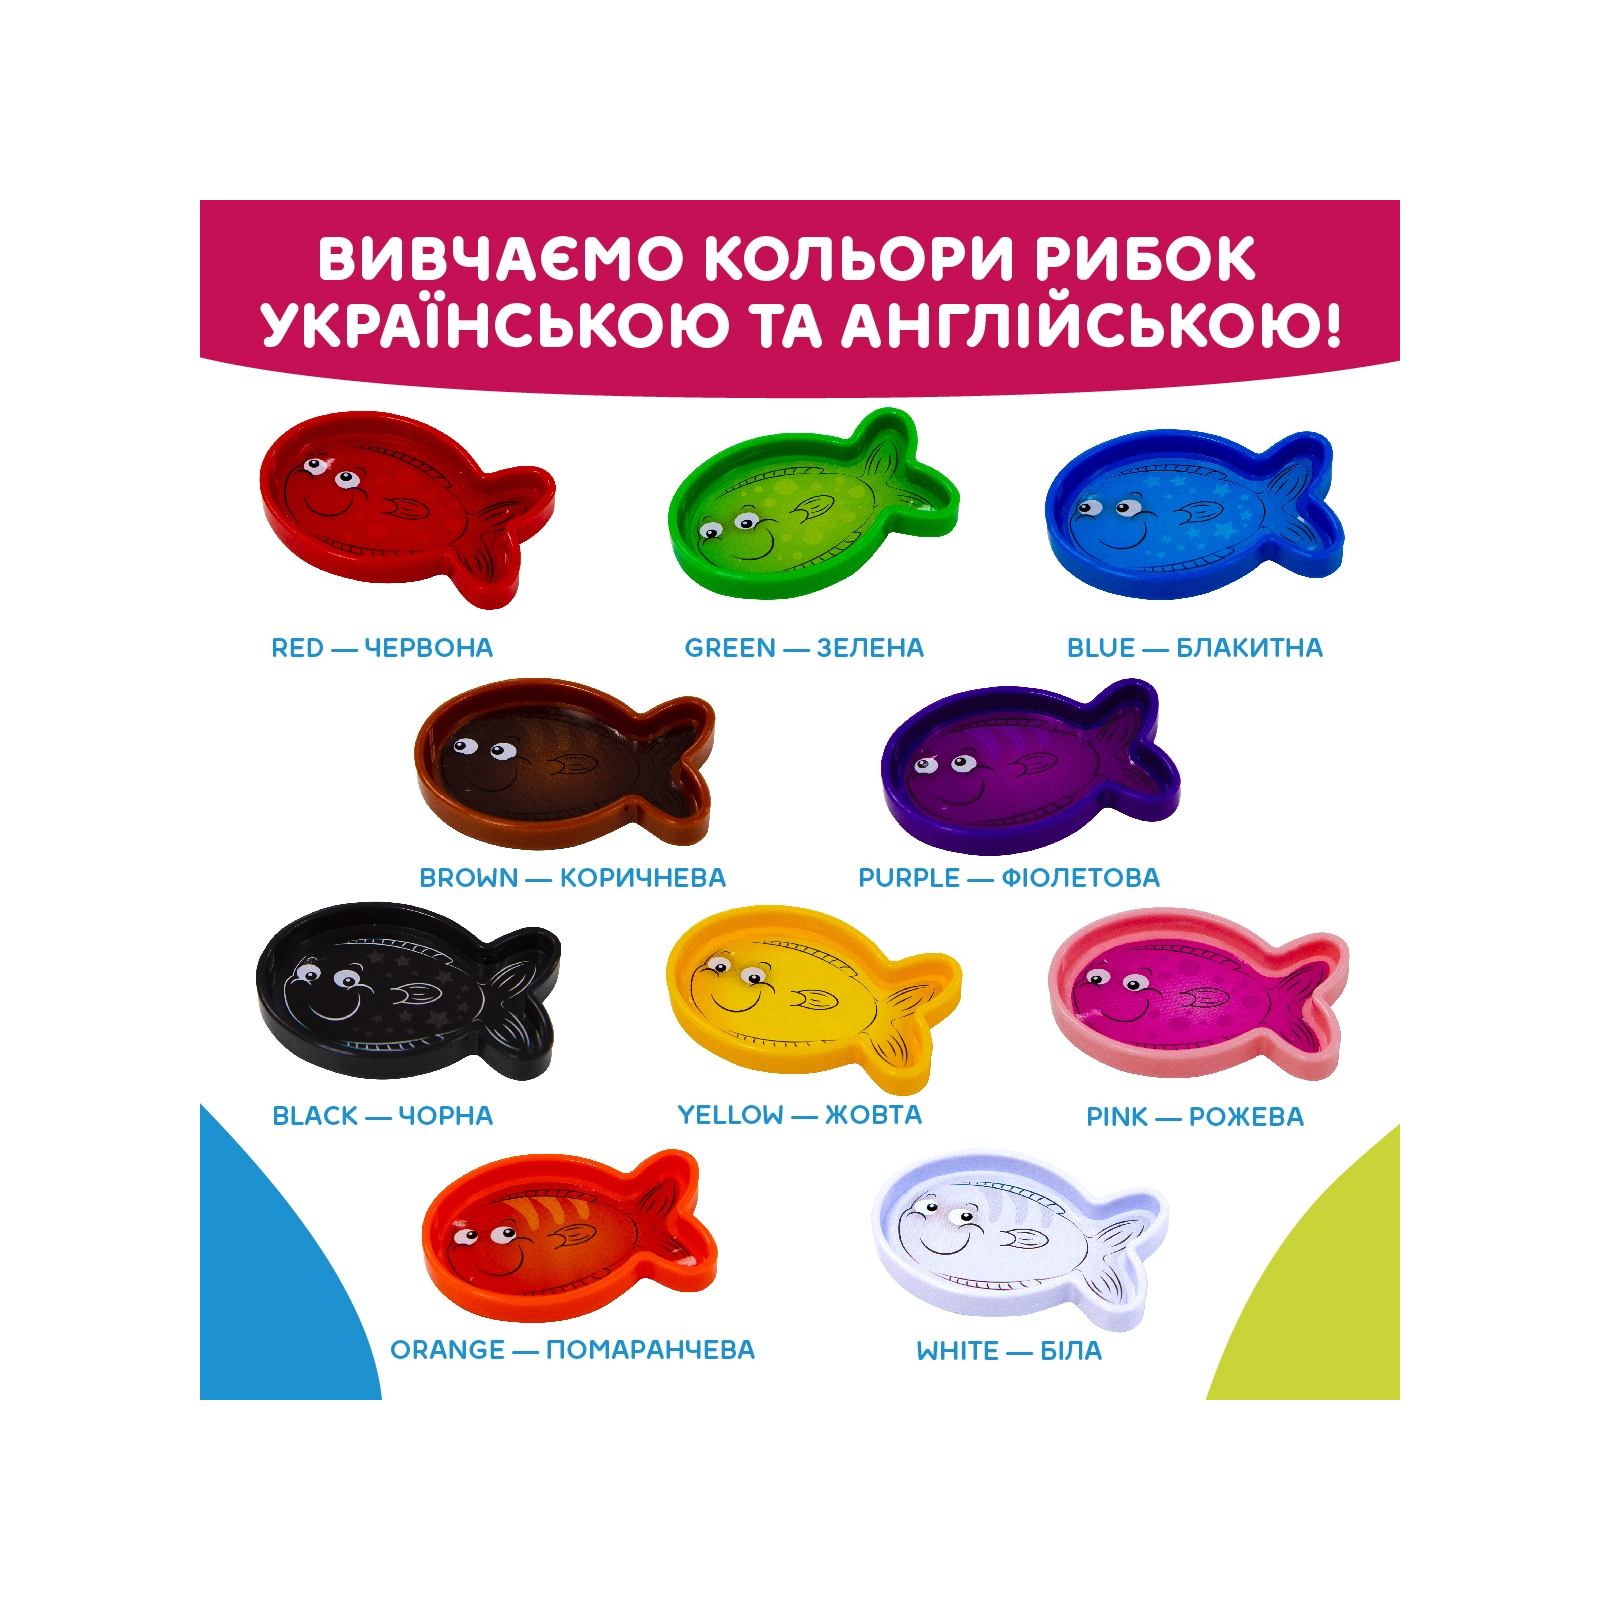 Развивающая игрушка Kiddi Smart Интерактивная обучающая игрушка Smart-Аквариум украинский и английский язык (207659) изображение 12